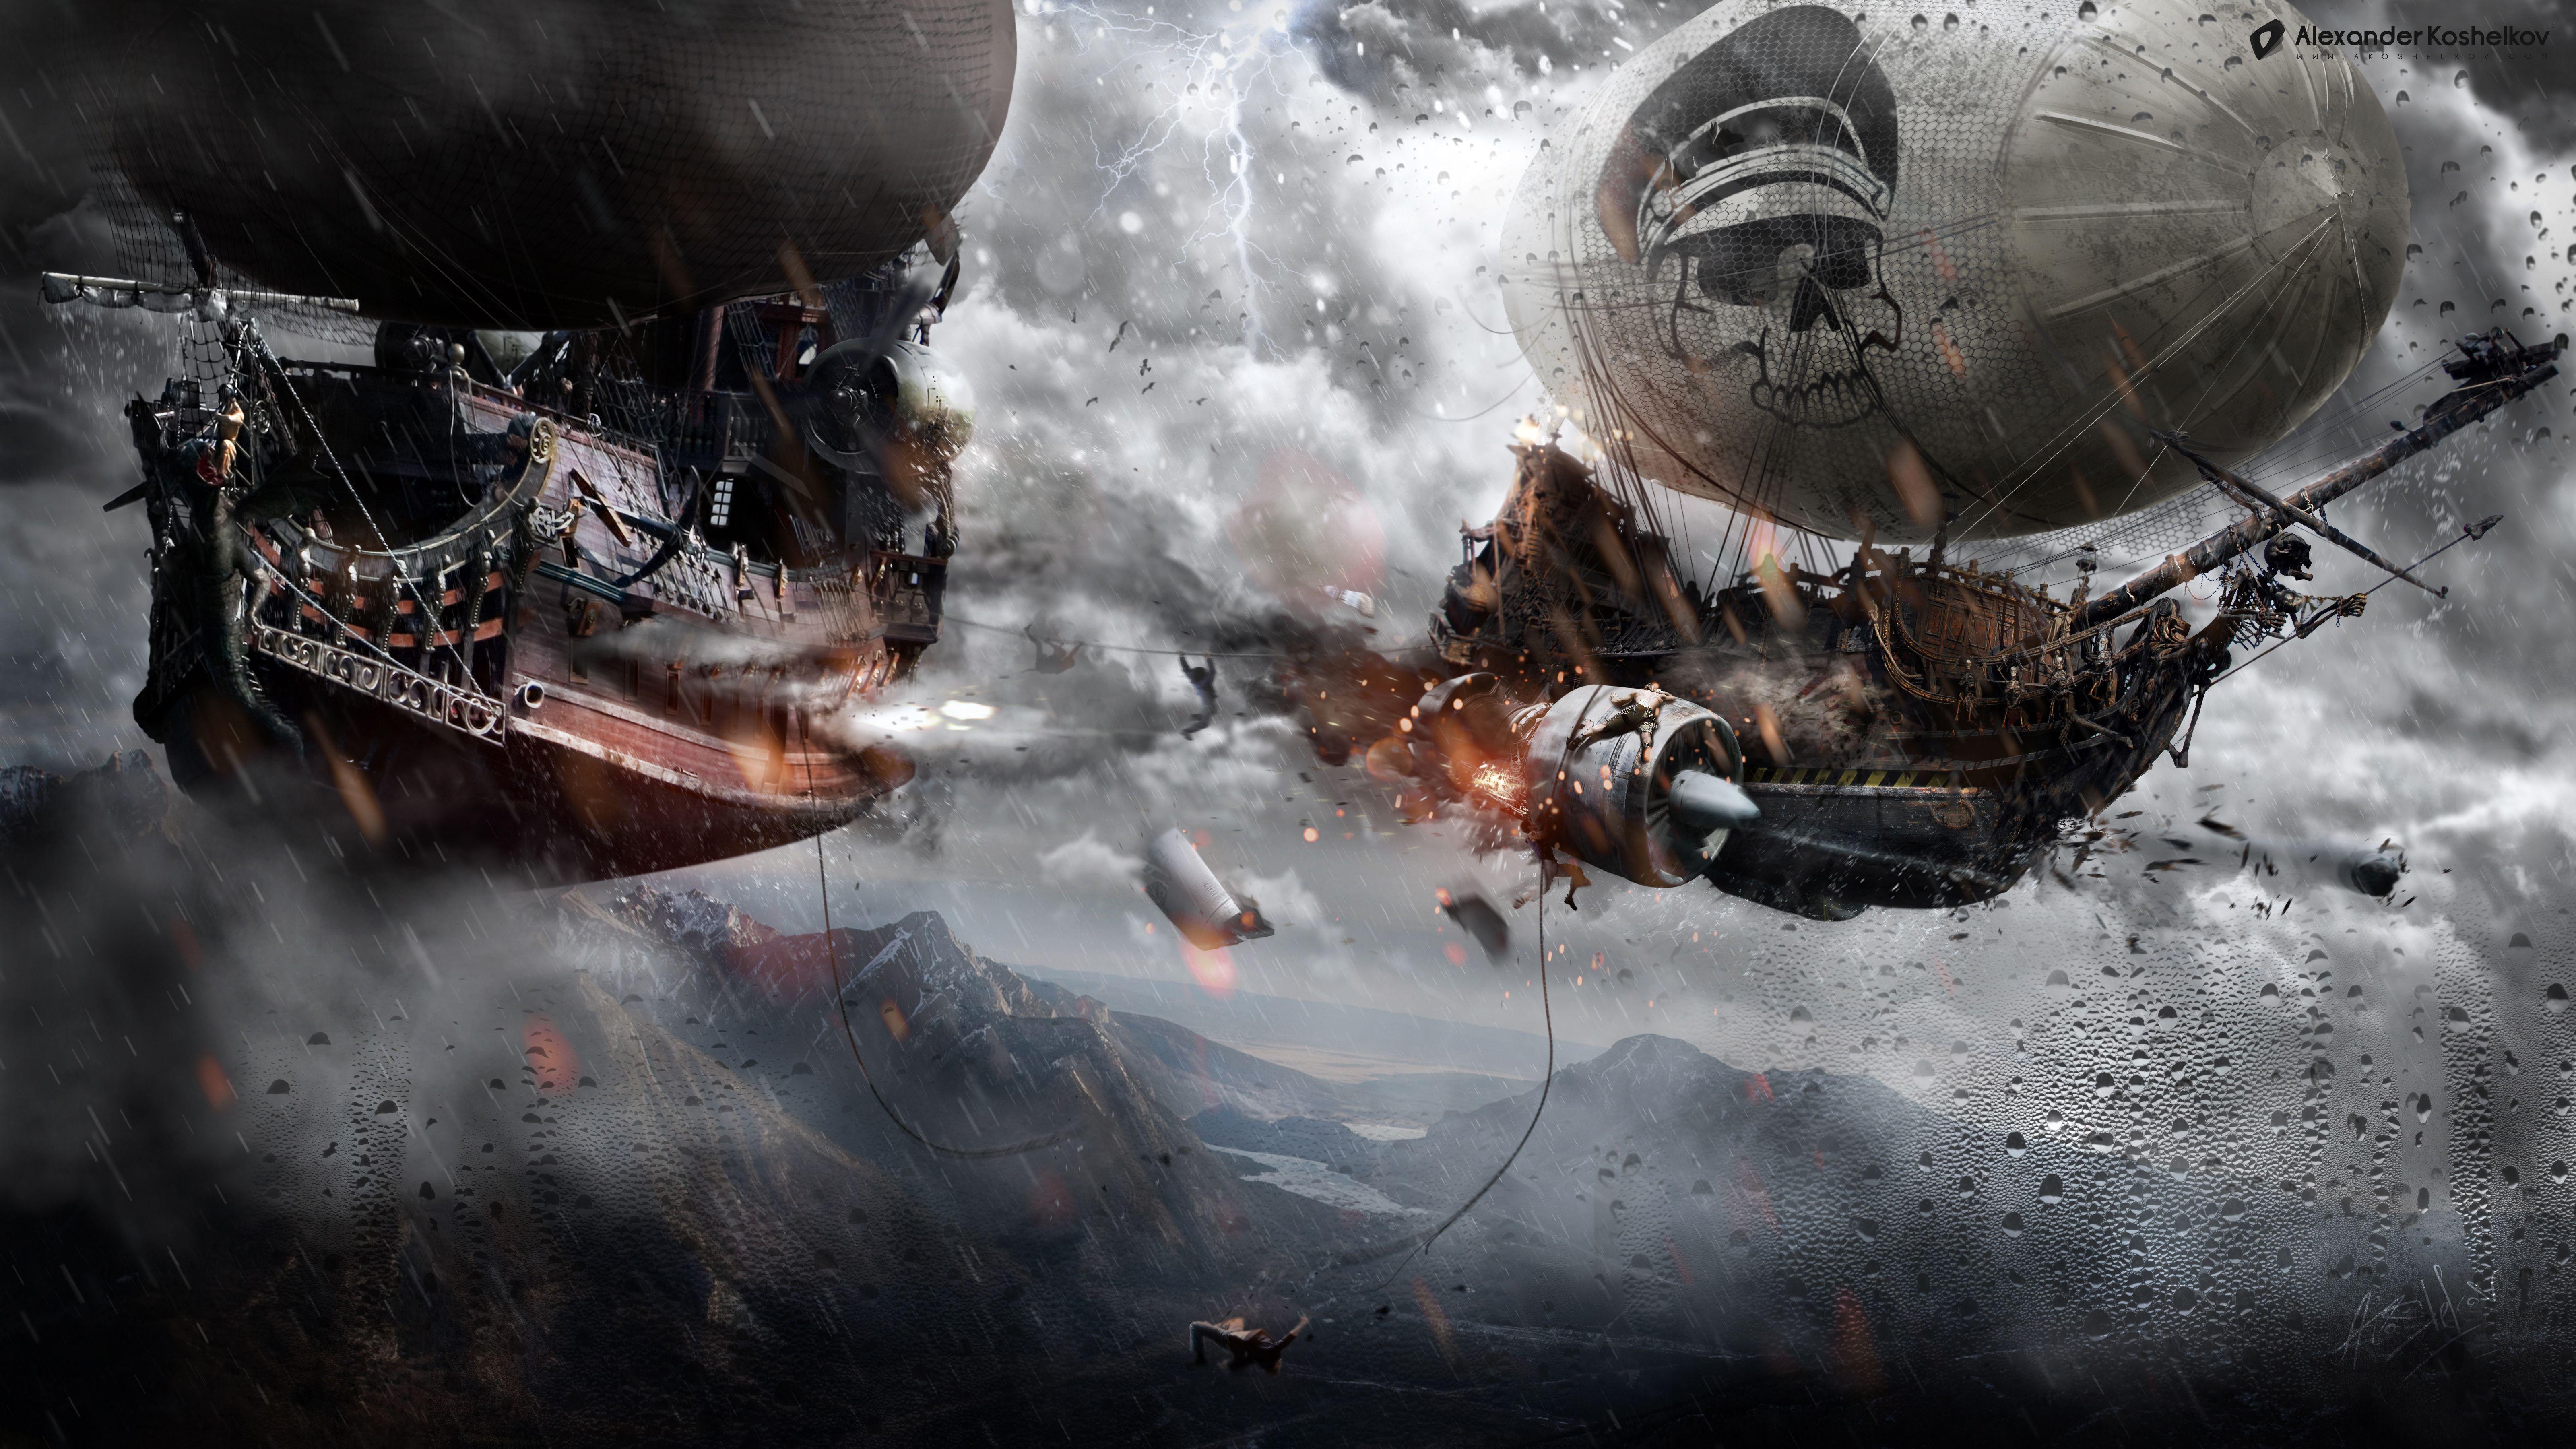 6400 x 3600 · jpeg - Airship Of Doom by Koshelkovviantart on @deviantART | Steampunk ...